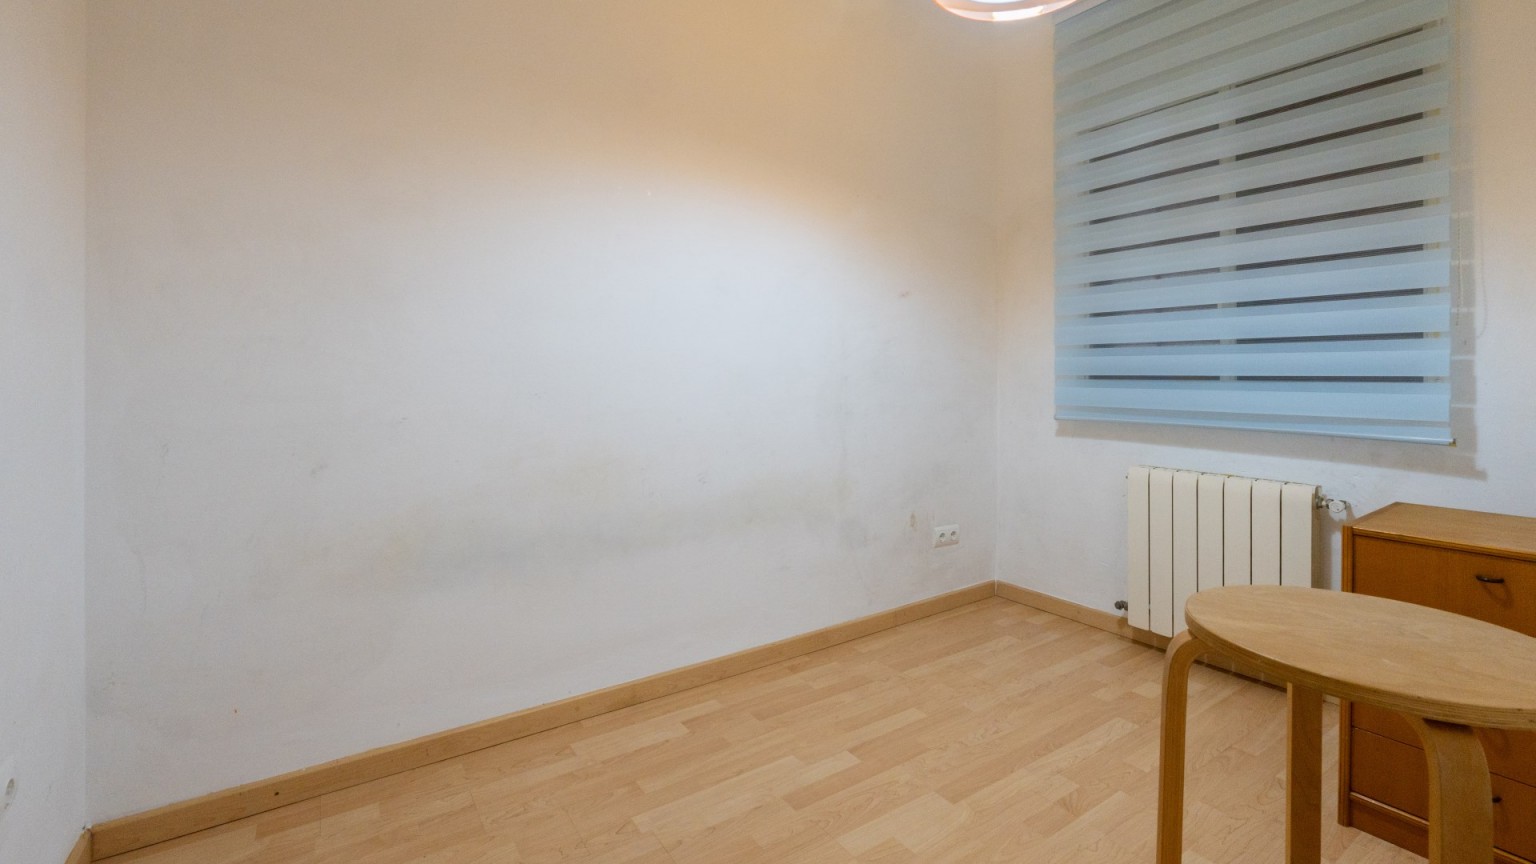 Appartement à vendre situé dans un quartier très calme au centre de la ville de Sant Gregori